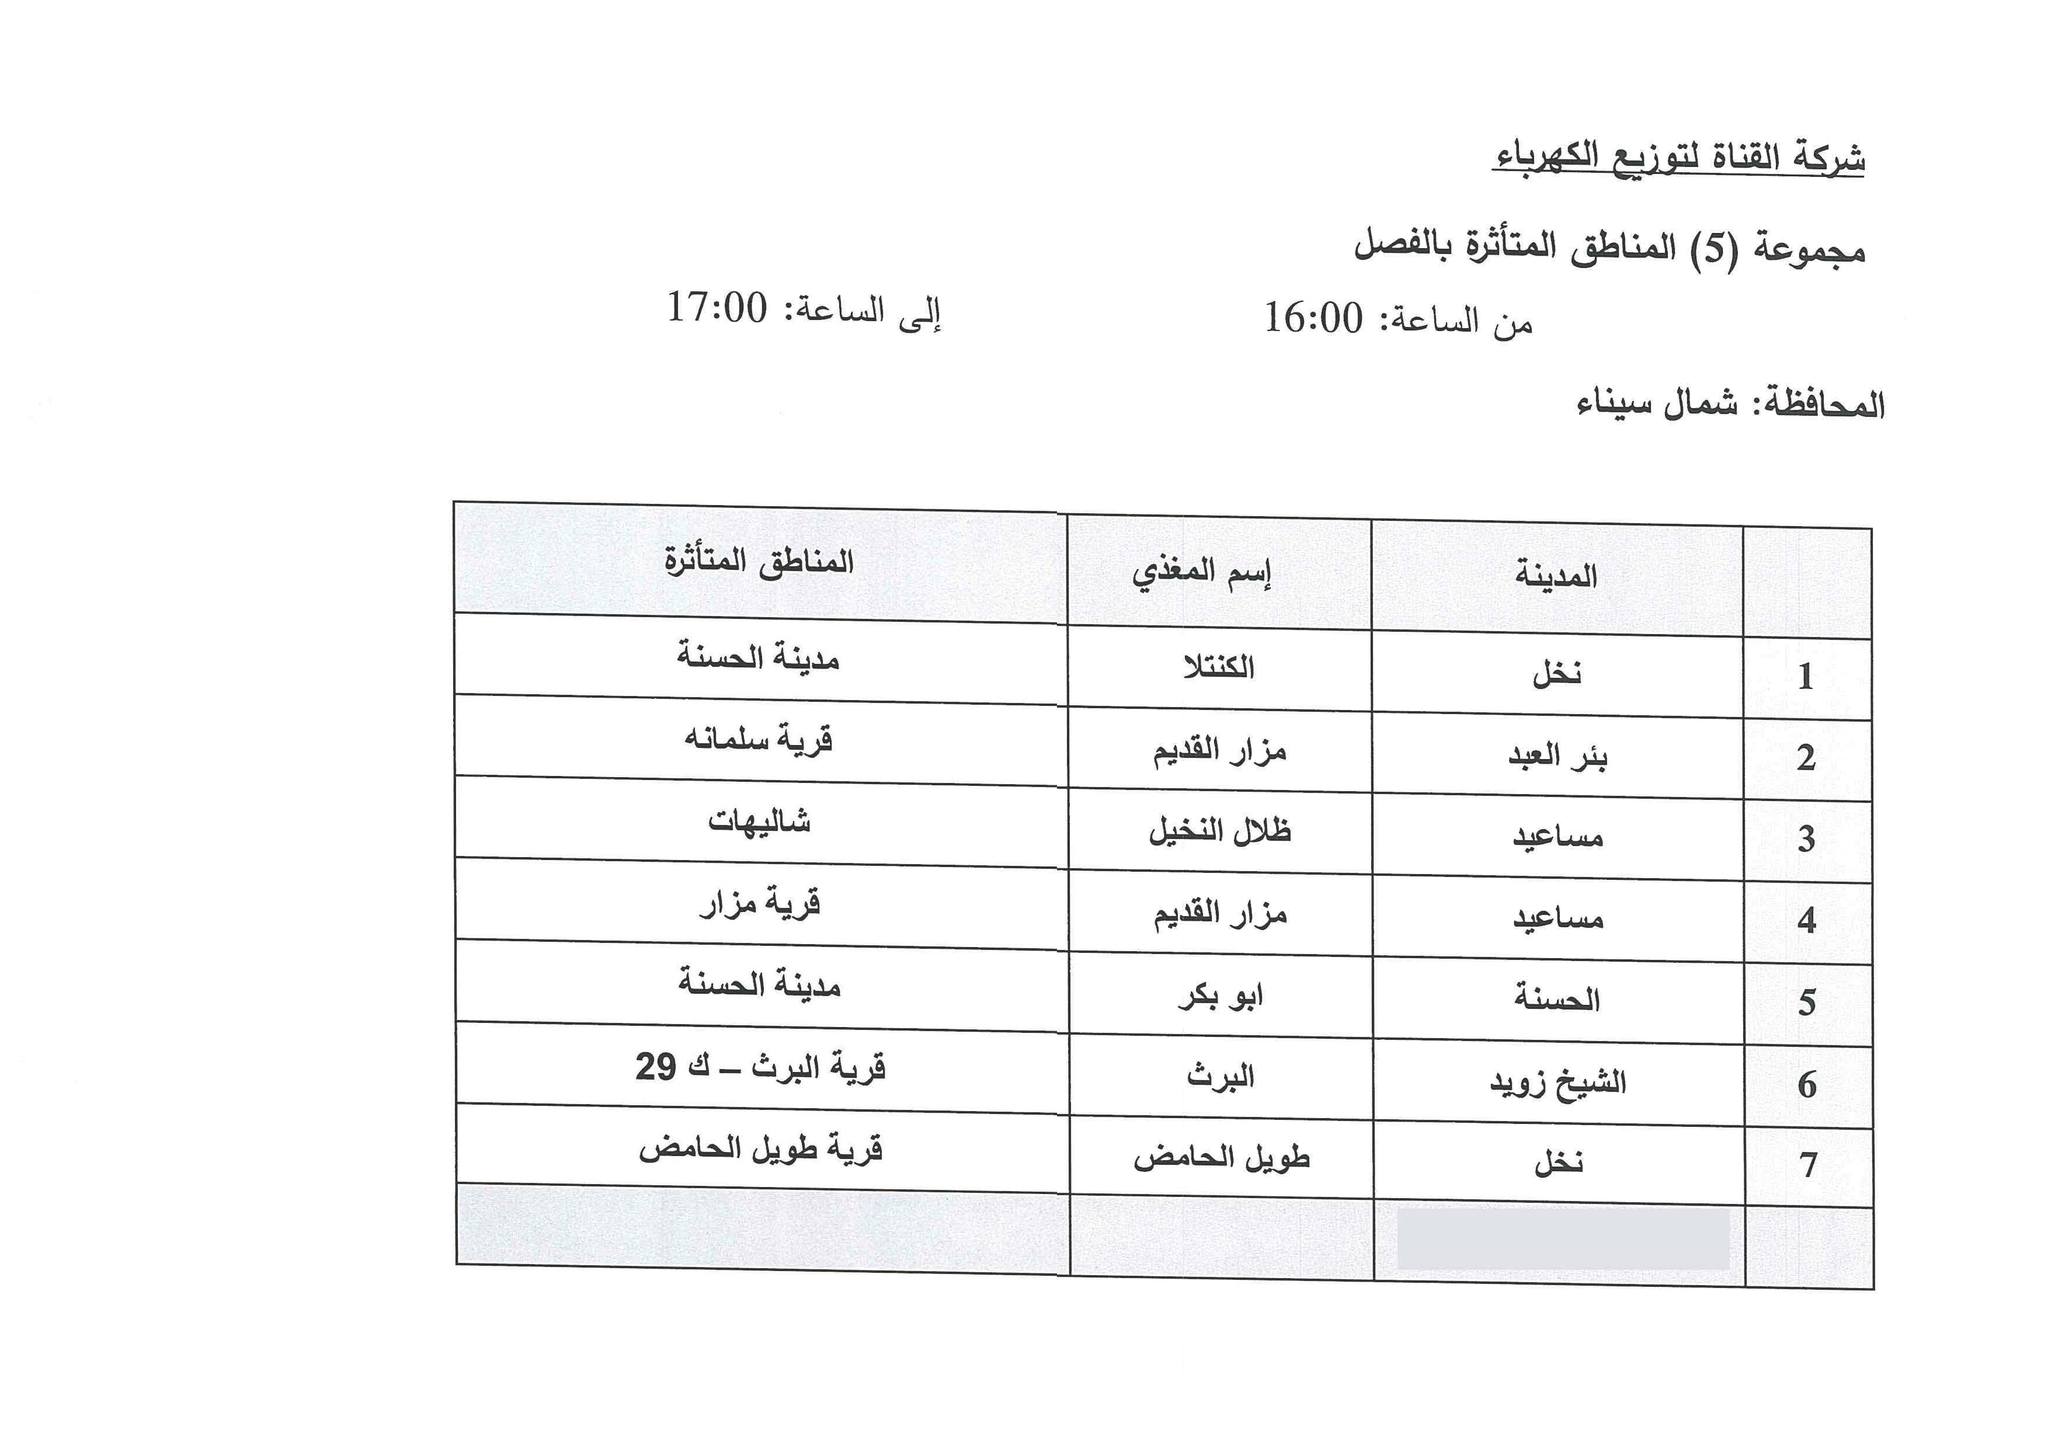 جدول مواعيد تخفيف الأحمال الكهربائية فى محافظة شمال سيناء (9)